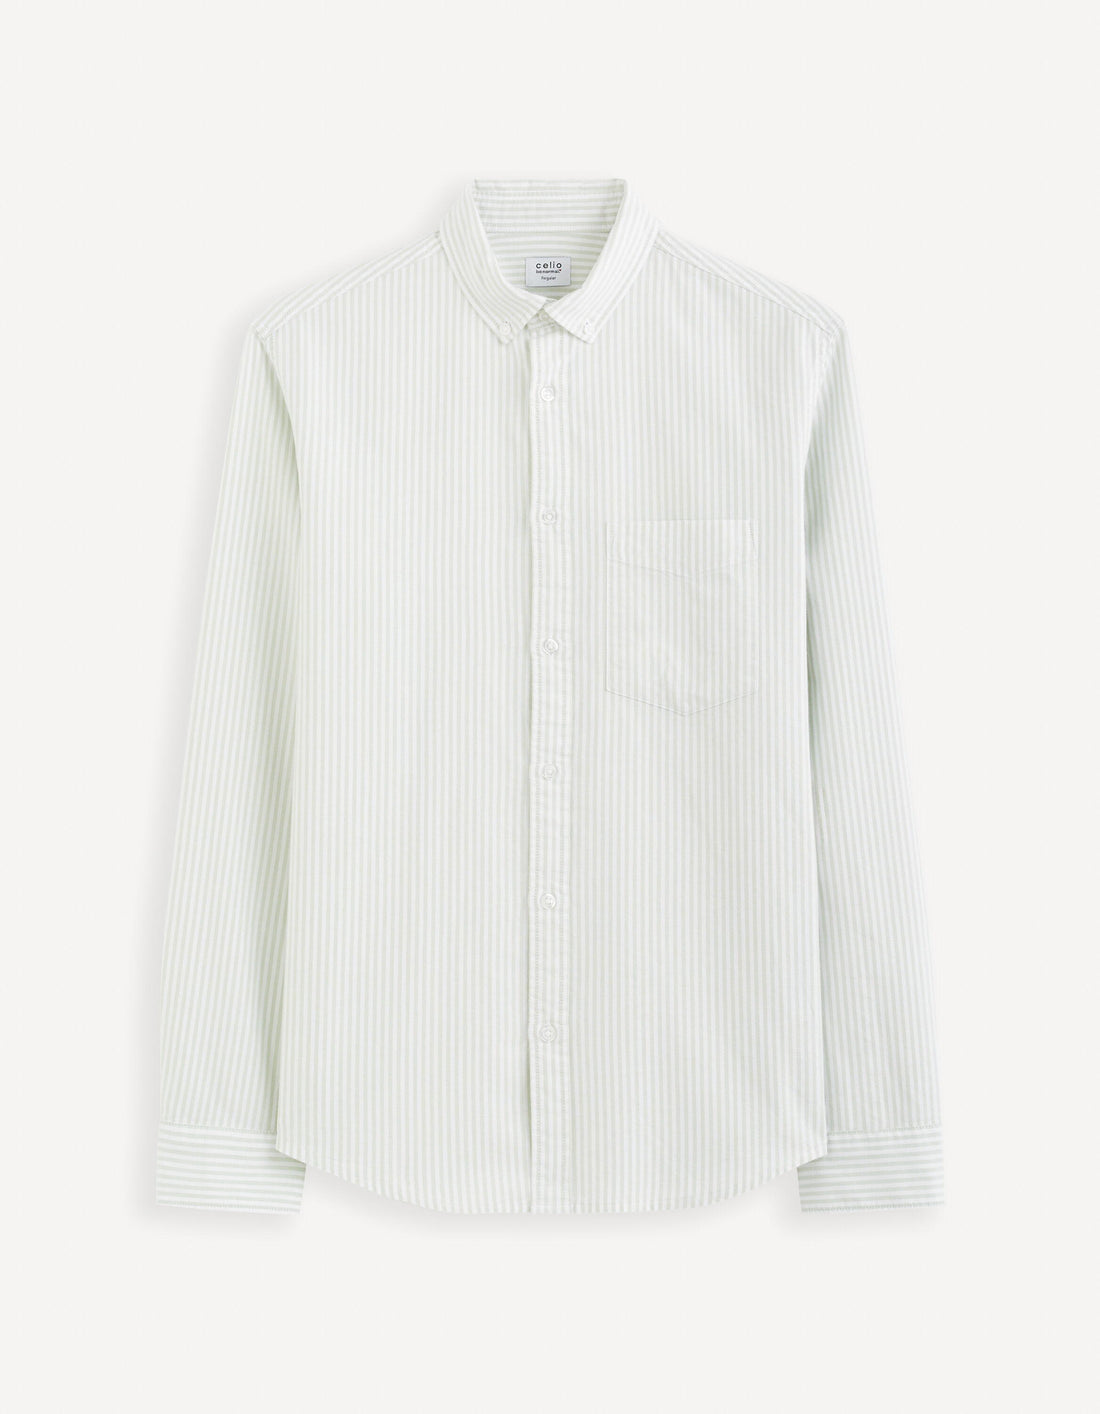 Regular 100% Cotton Oxford Shirt_CAOXFORDY_LIGHT GREEN_02